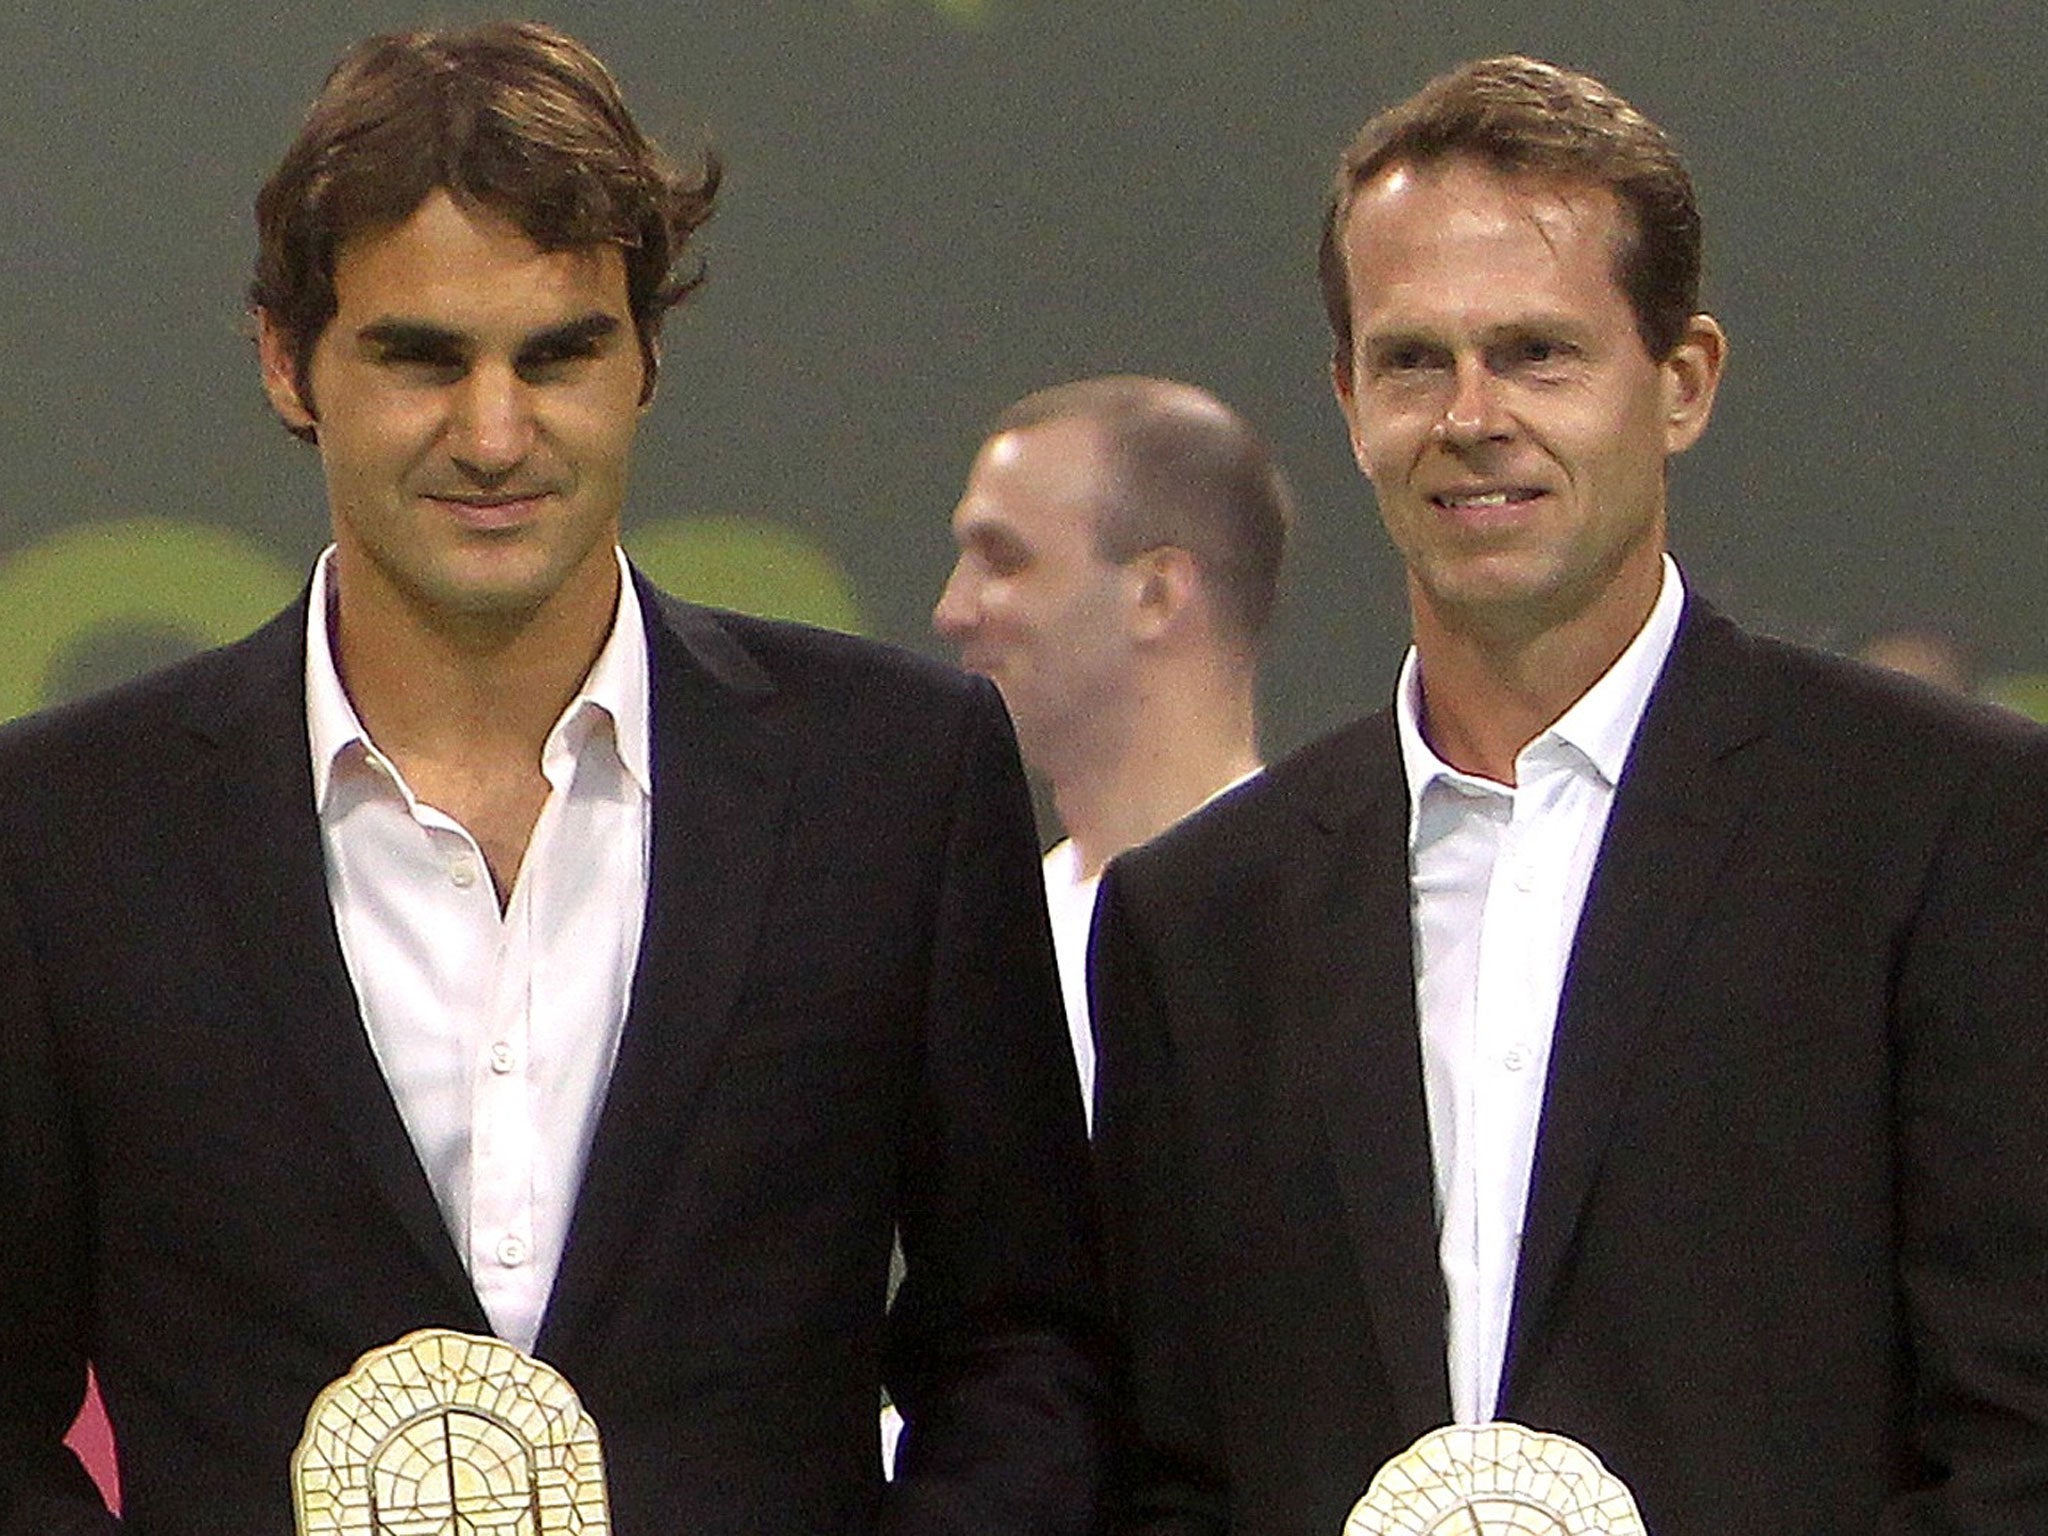 Roger Federer and Stefan Edberg in 2012 - Edberg is joining Federer's coaching team